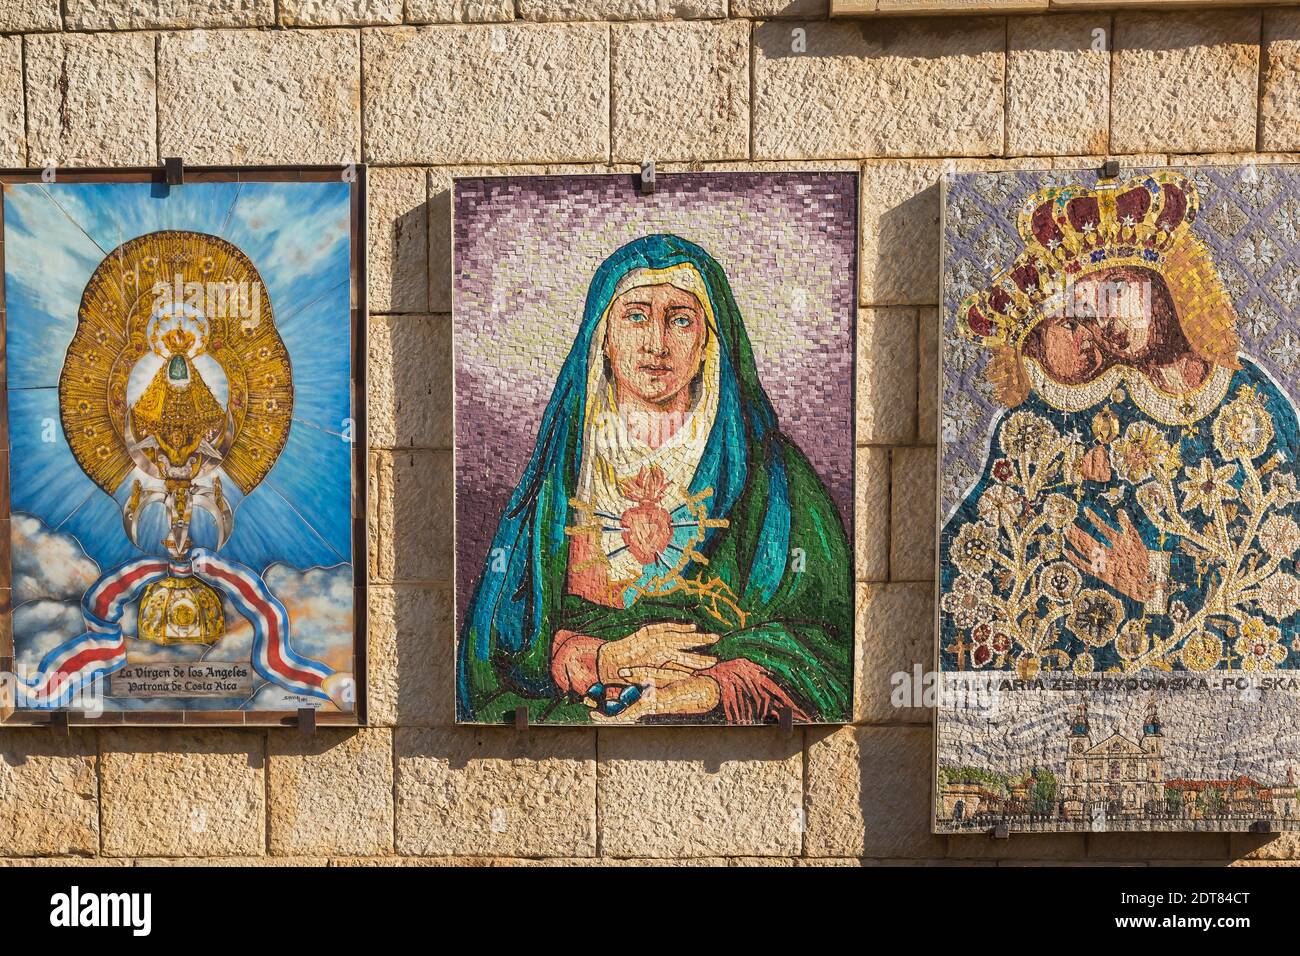 Mur de pierre avec mosaïques de scènes religieuses, l'église de l'Annonciation, Nazareth, Israël Banque D'Images